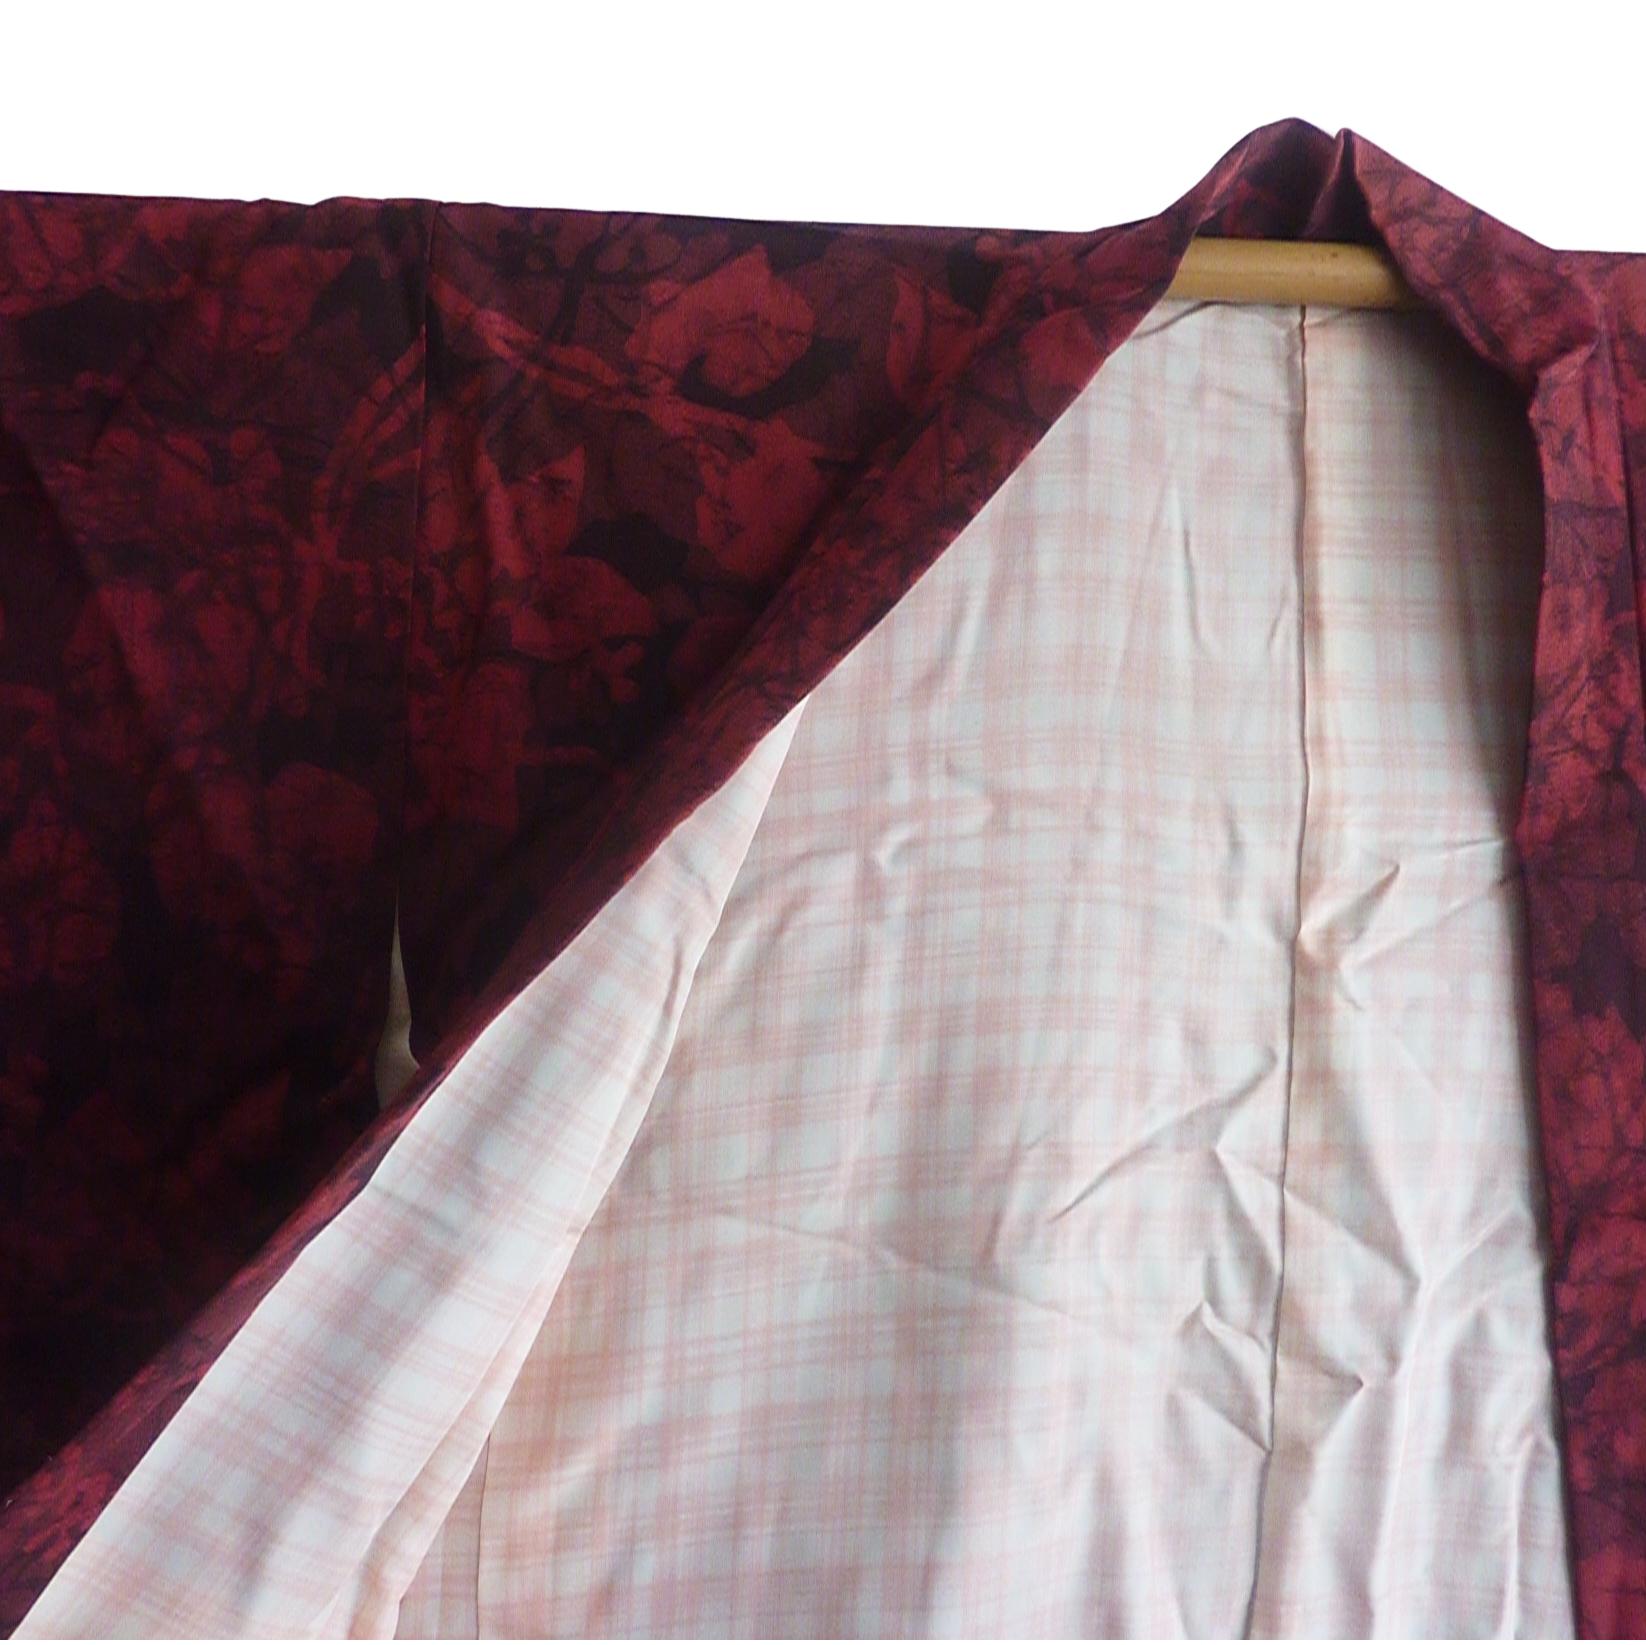 Veste kimono Haori en soie ancienne  
Fabrice : crêpe de soie lourd imprimé de feuillage rouge et noir
Doublure en soie écossaise pêche.
Circa : 1910
Lieu d'origine : Japon
MATERIAL : Soie
Condit : Très bon
Longueur totale 32